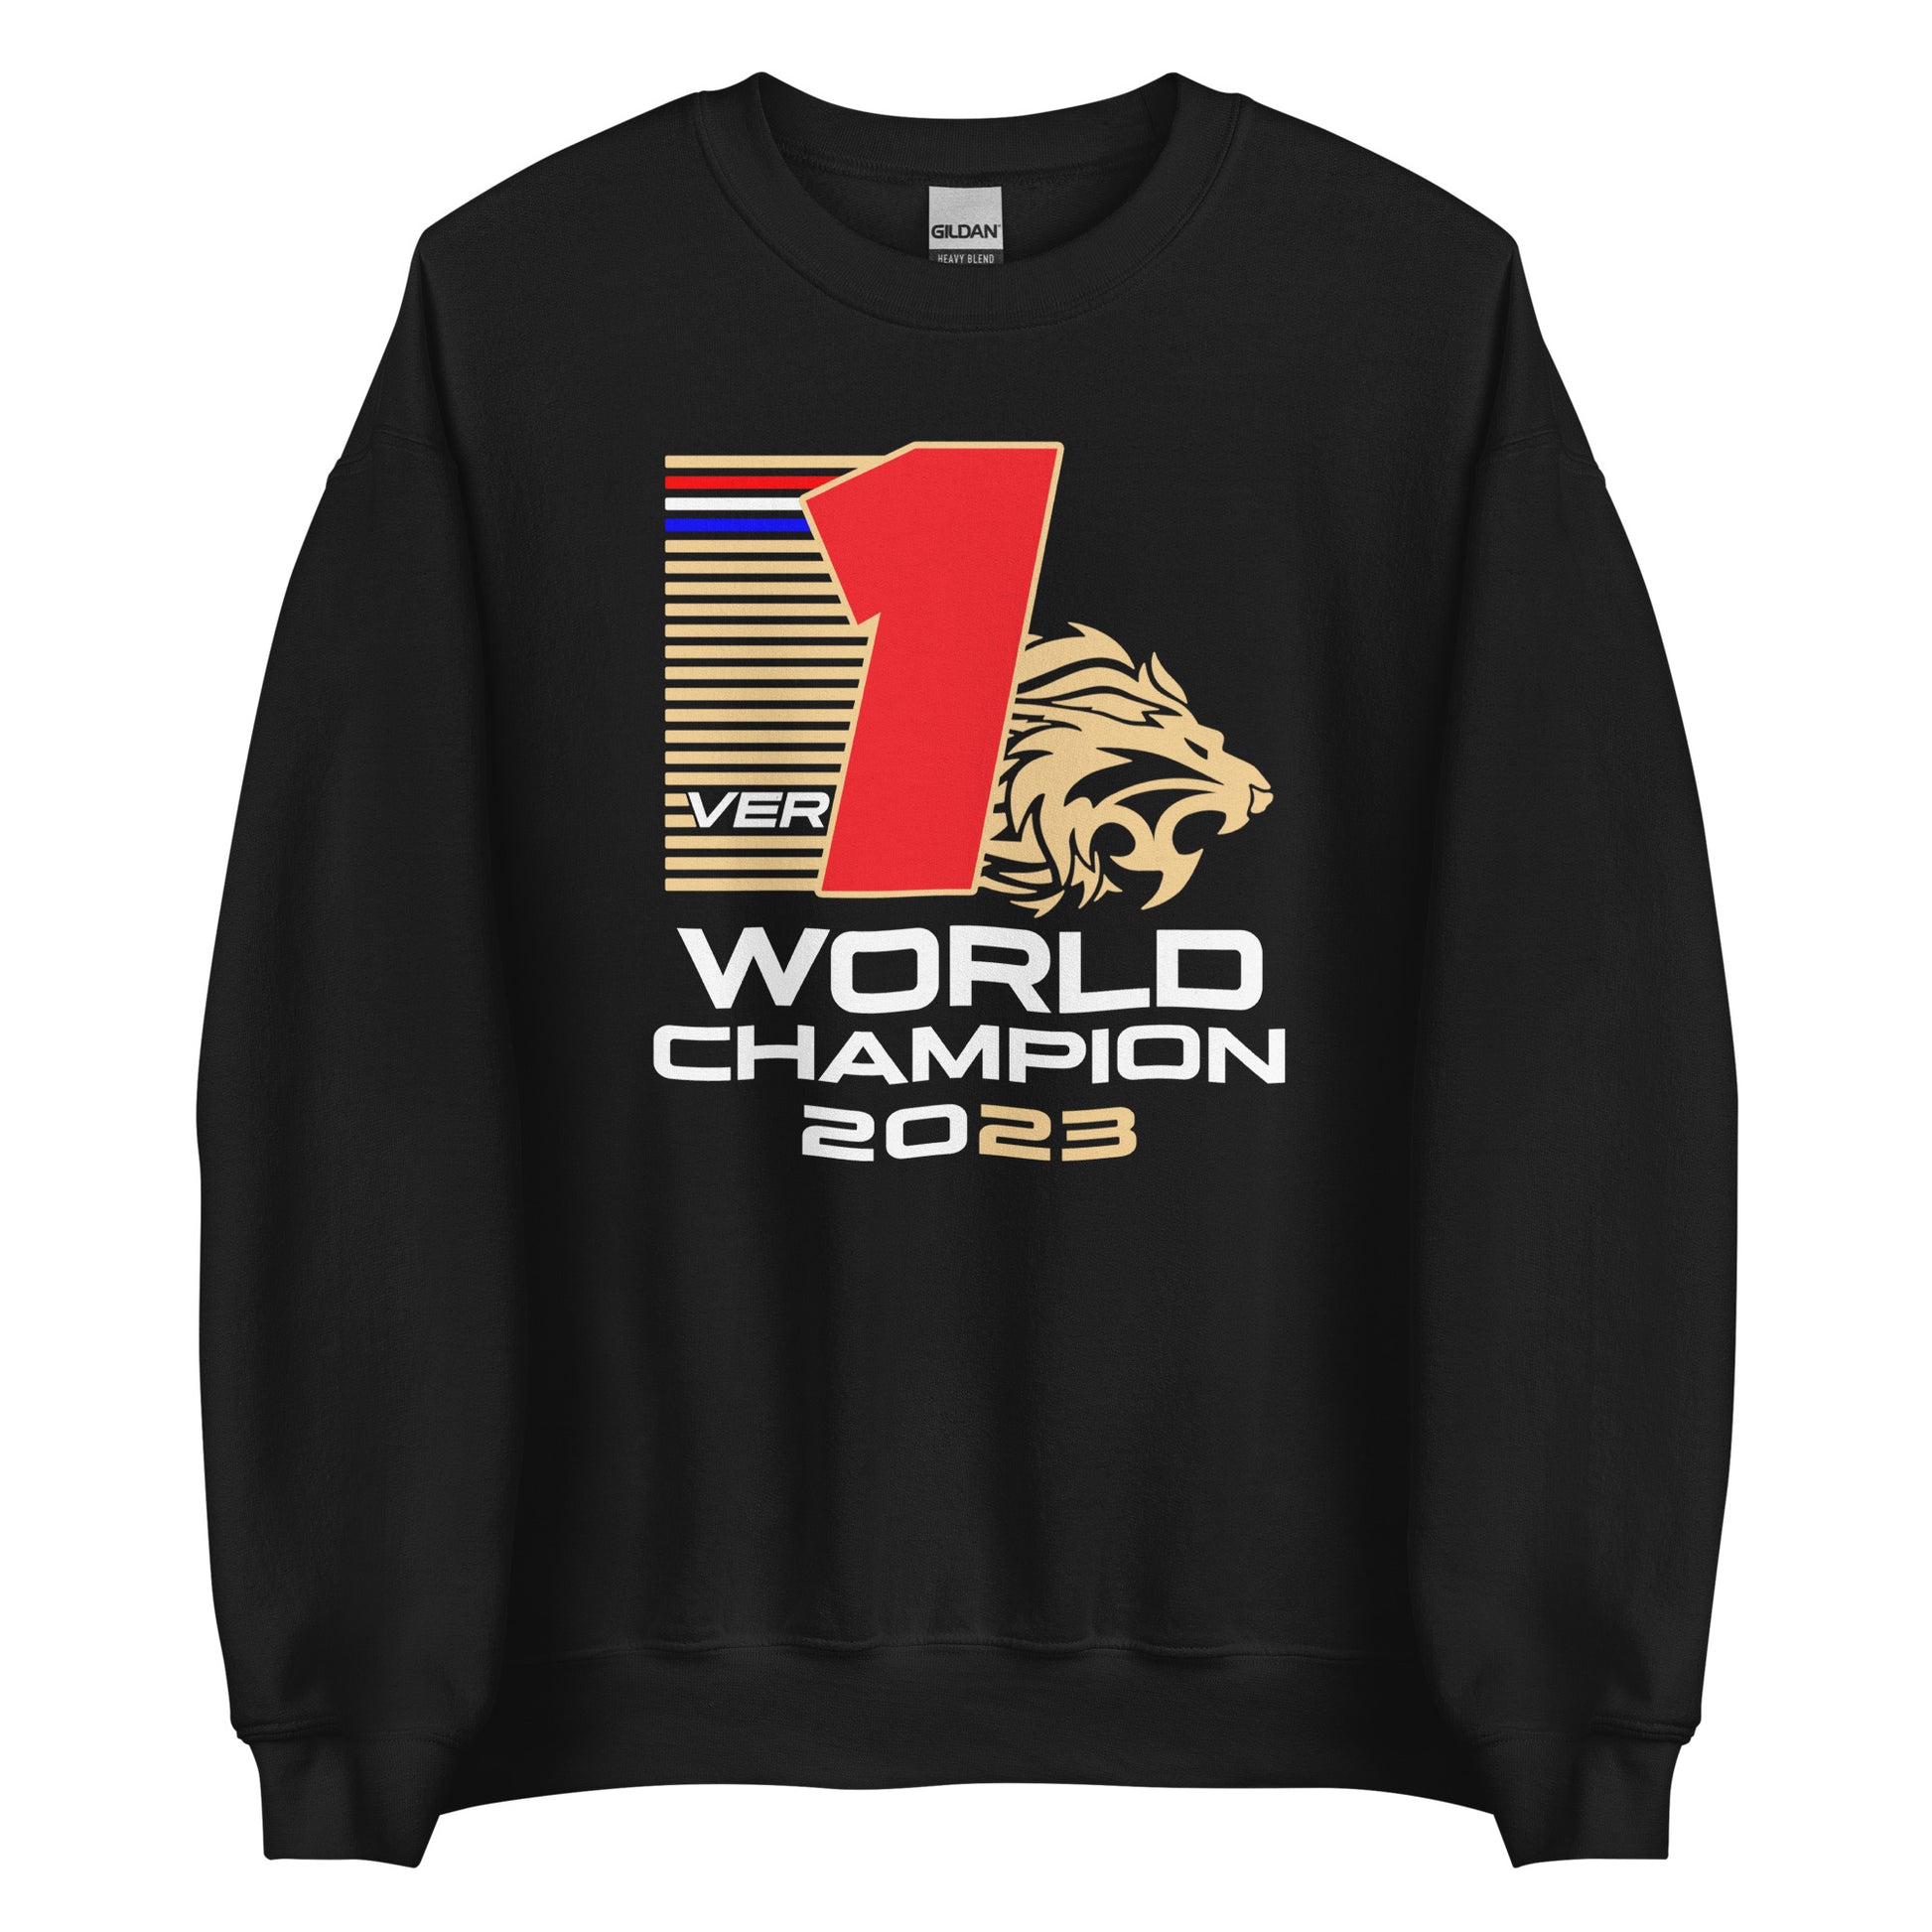 Max verstappen world champion 2023 sweatshirt black